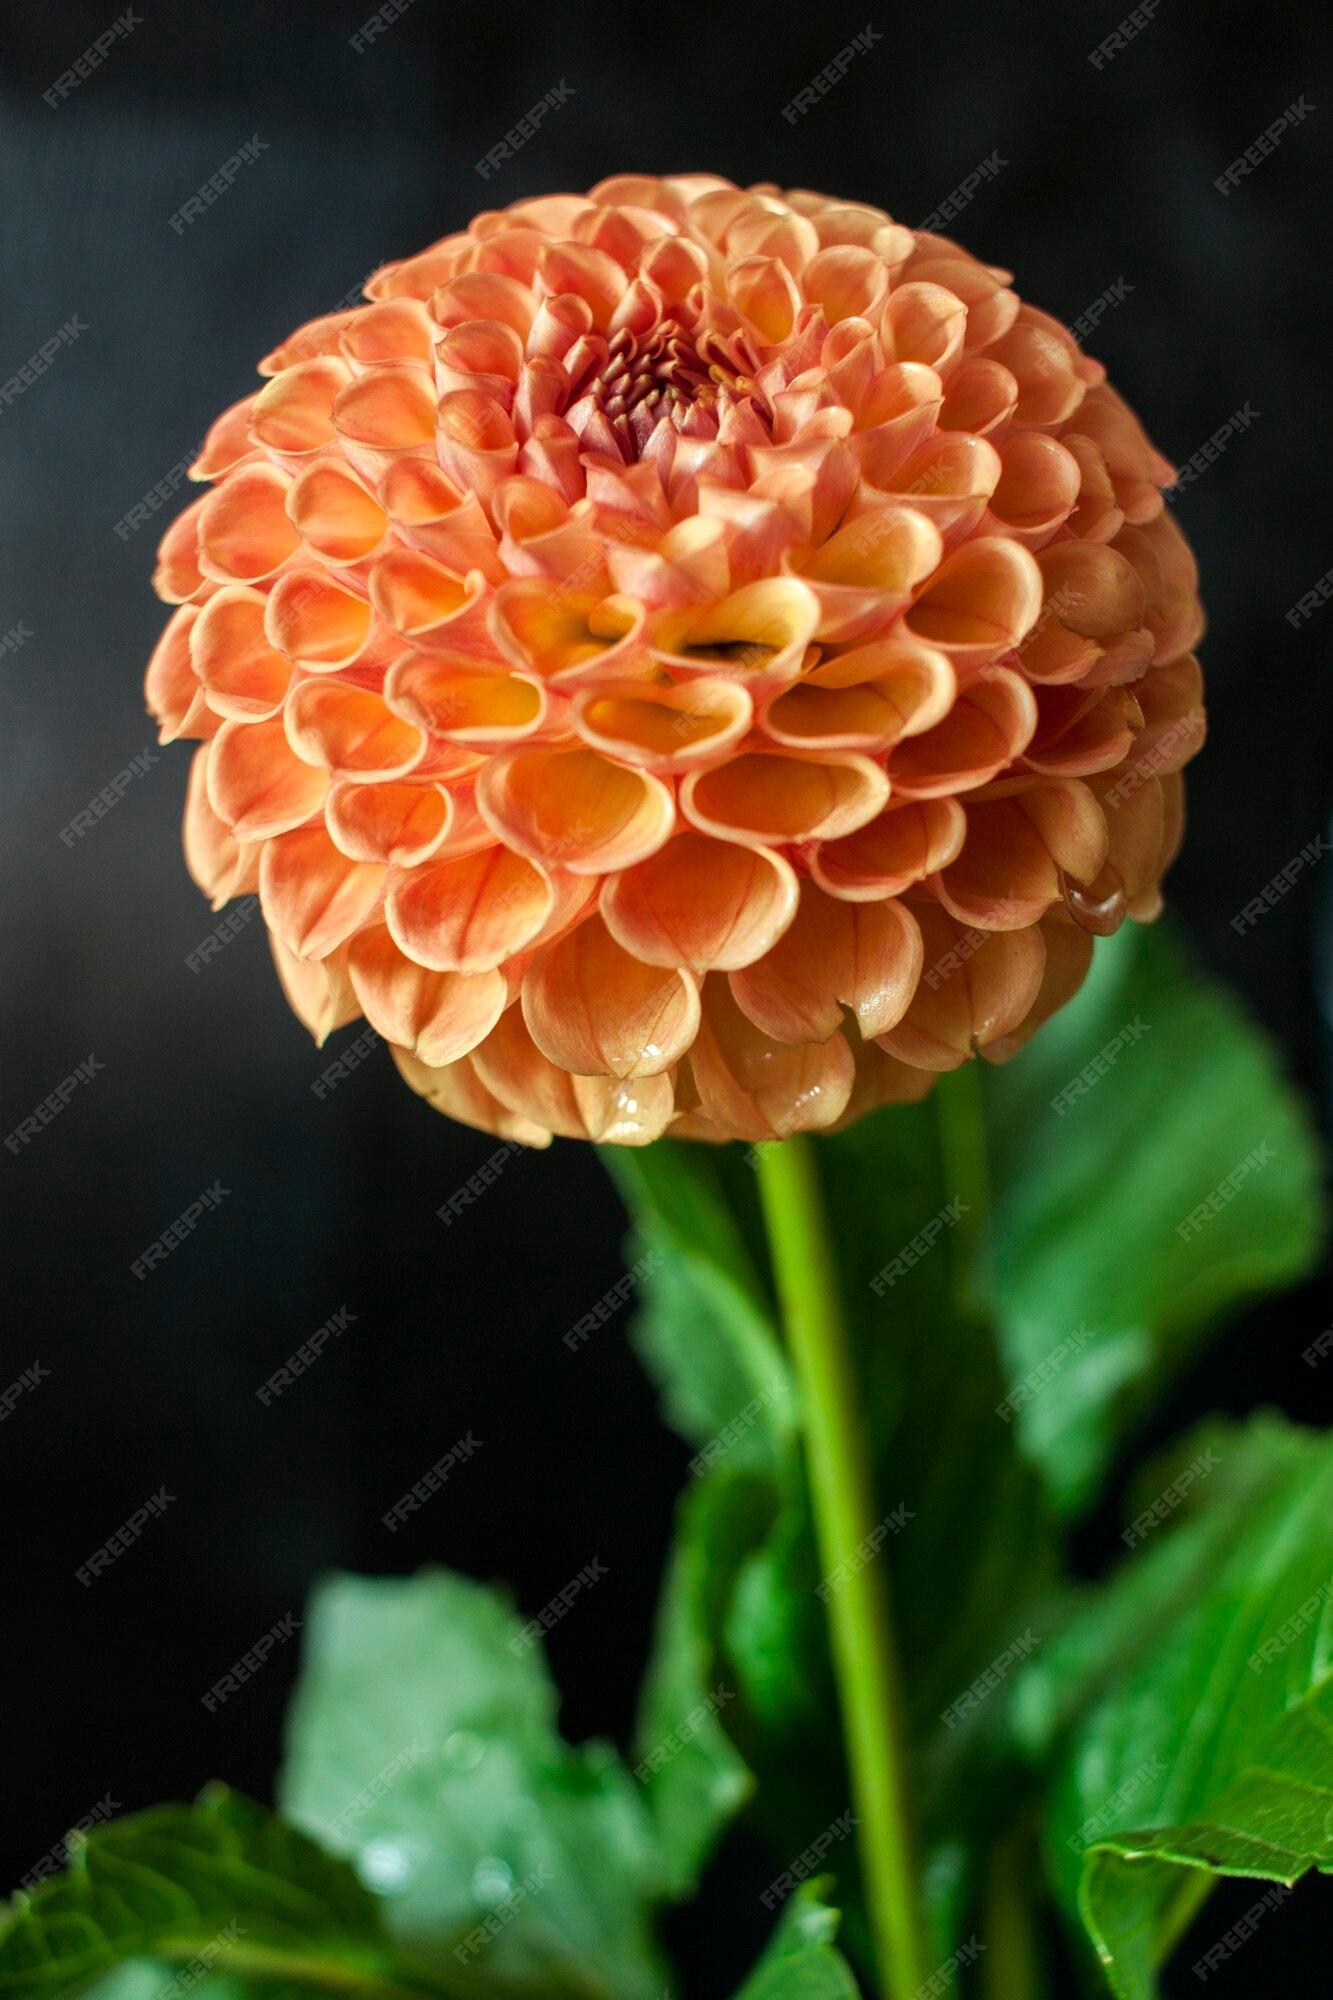 Flor fresca da dália flor da dália laranja com gota de água no fundo preto.  | Foto Premium